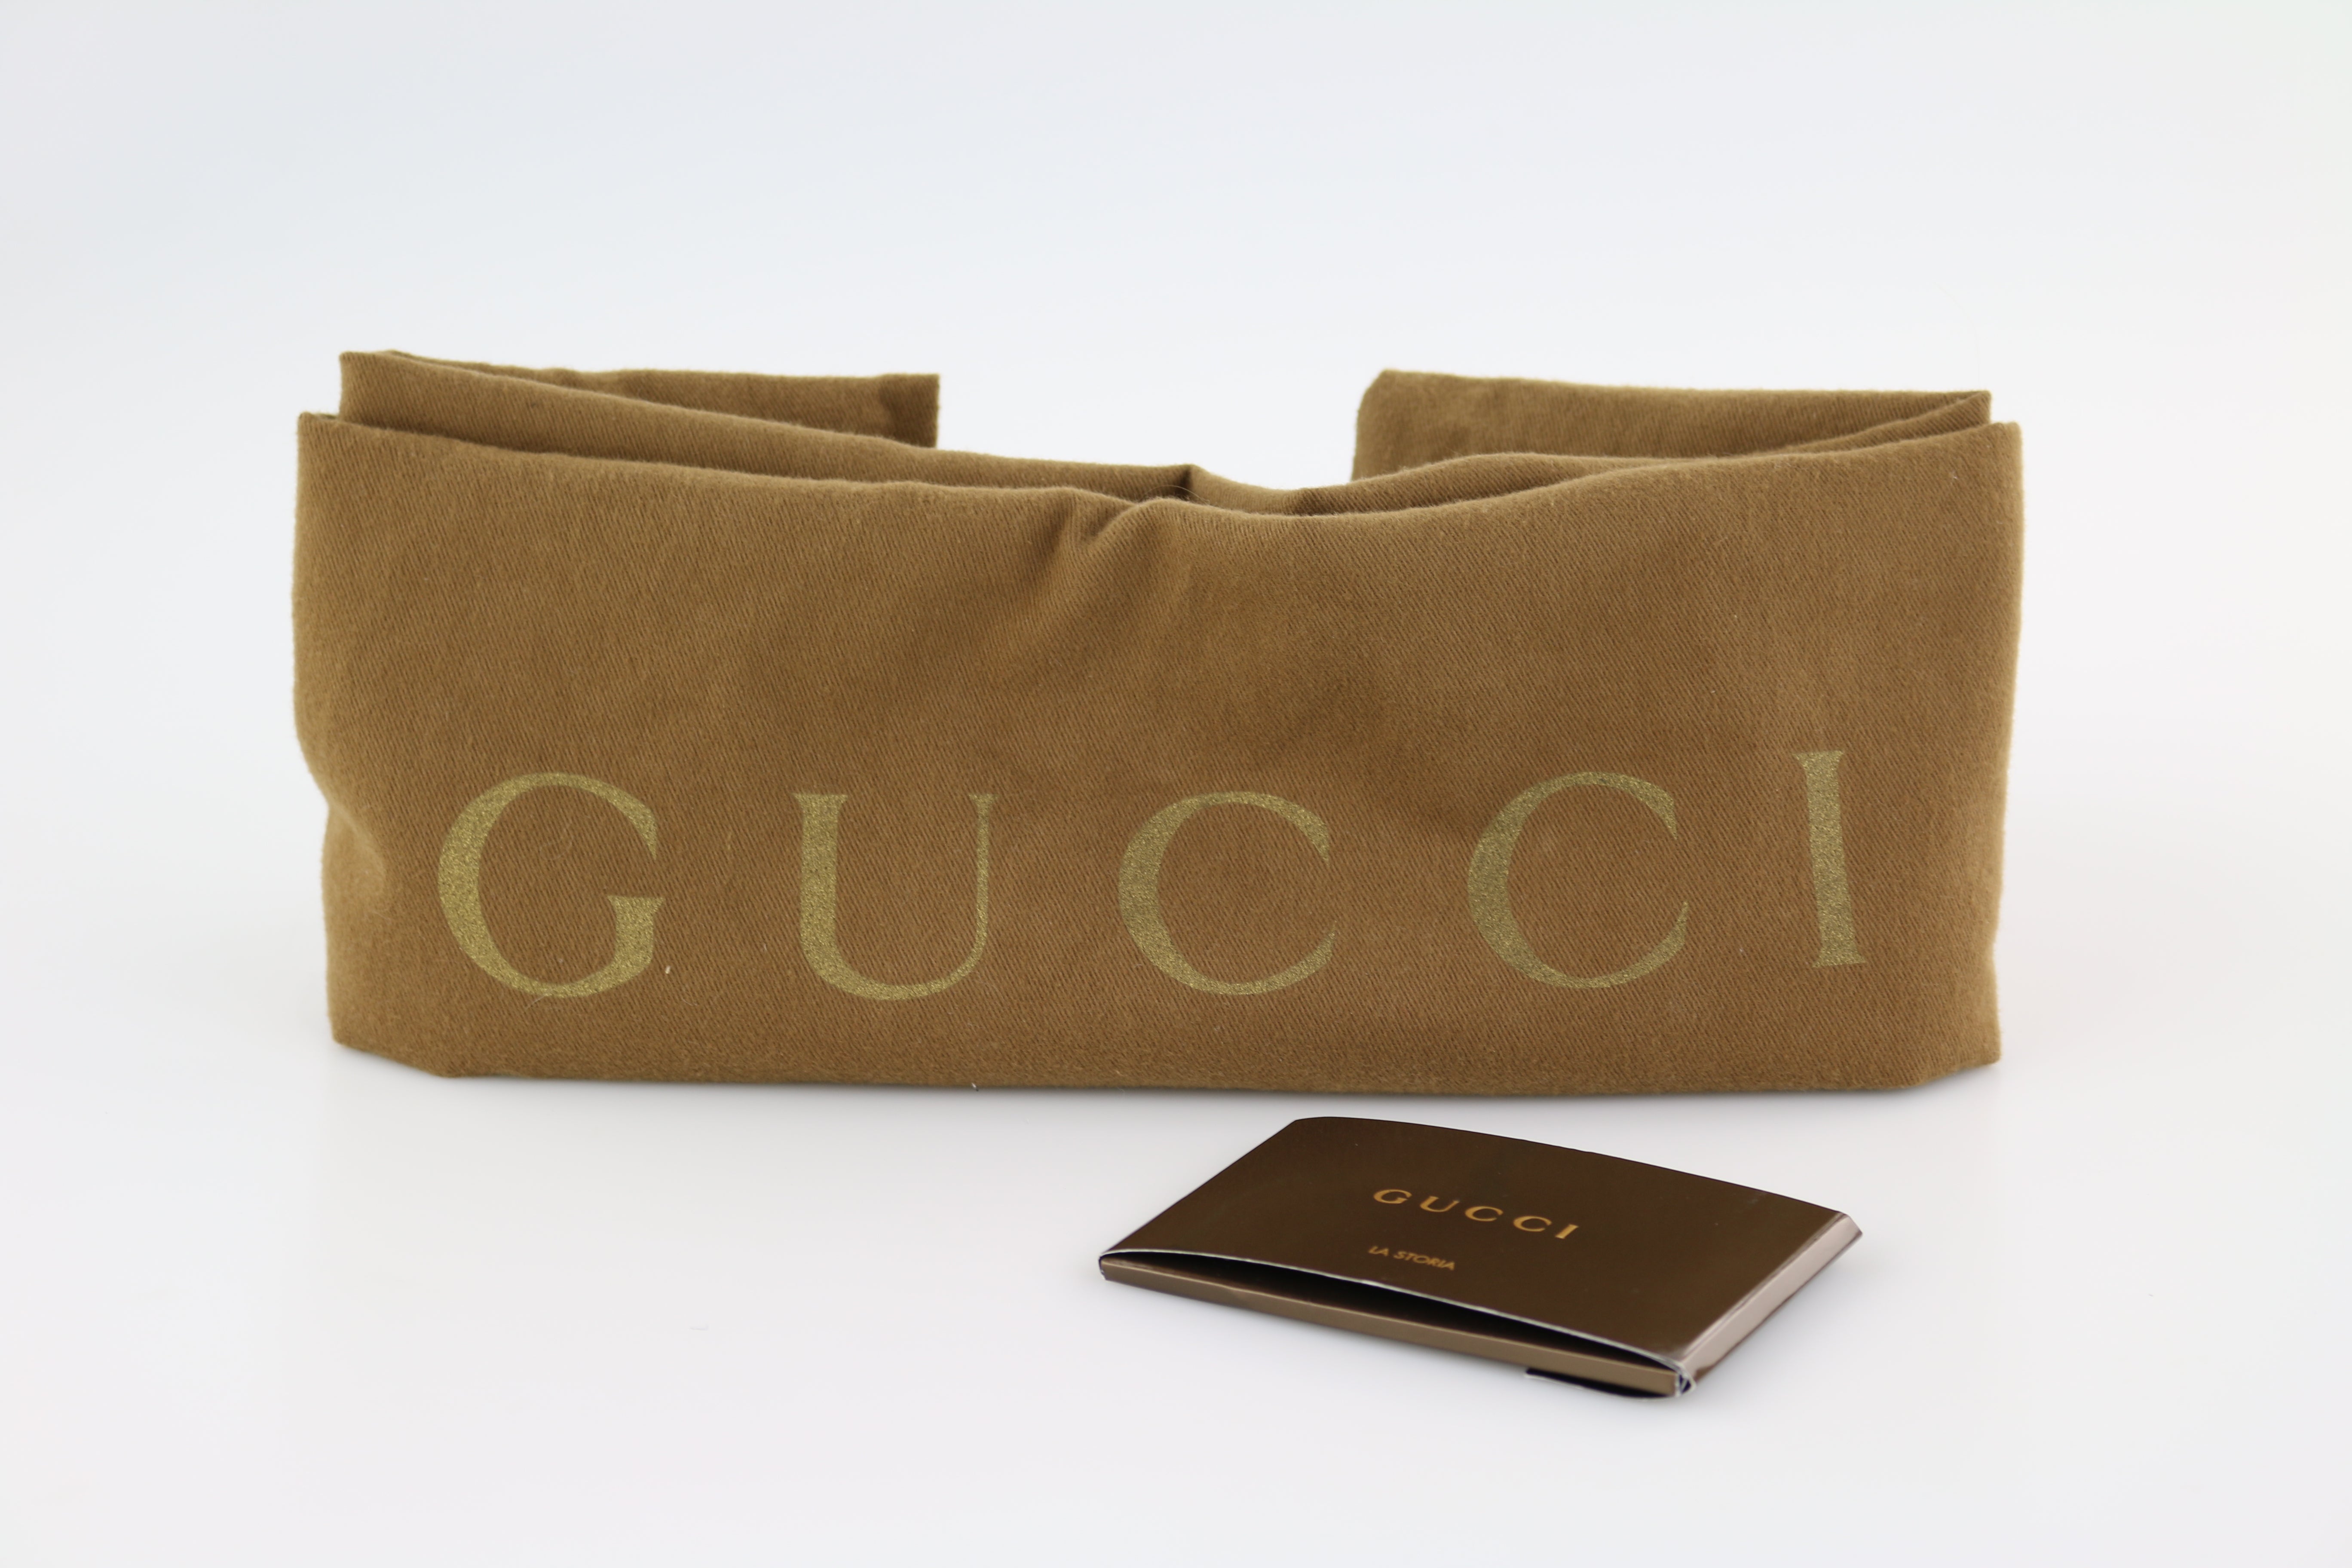 Sold at Auction: Gucci, GUCCI SABRINA NATURAL PYTHON LARGE HOBO BAG